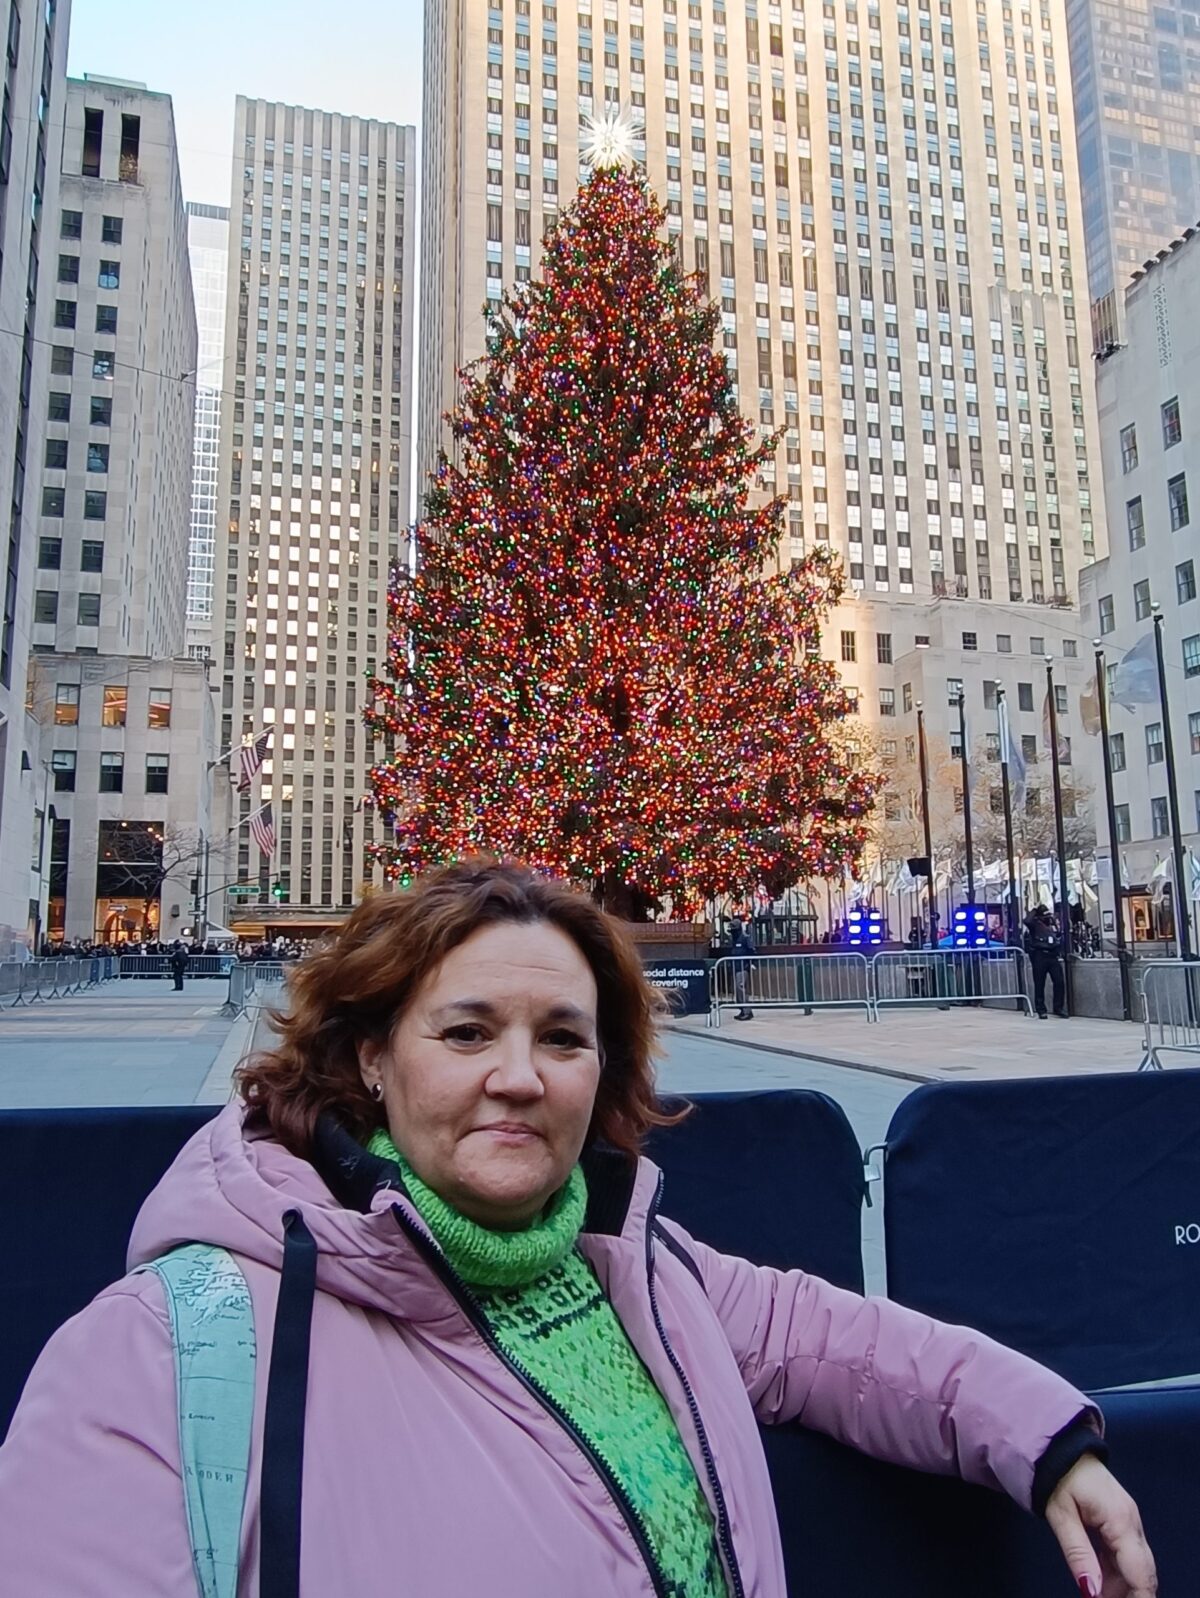 Arbol de Navidad del Rockefeller Center